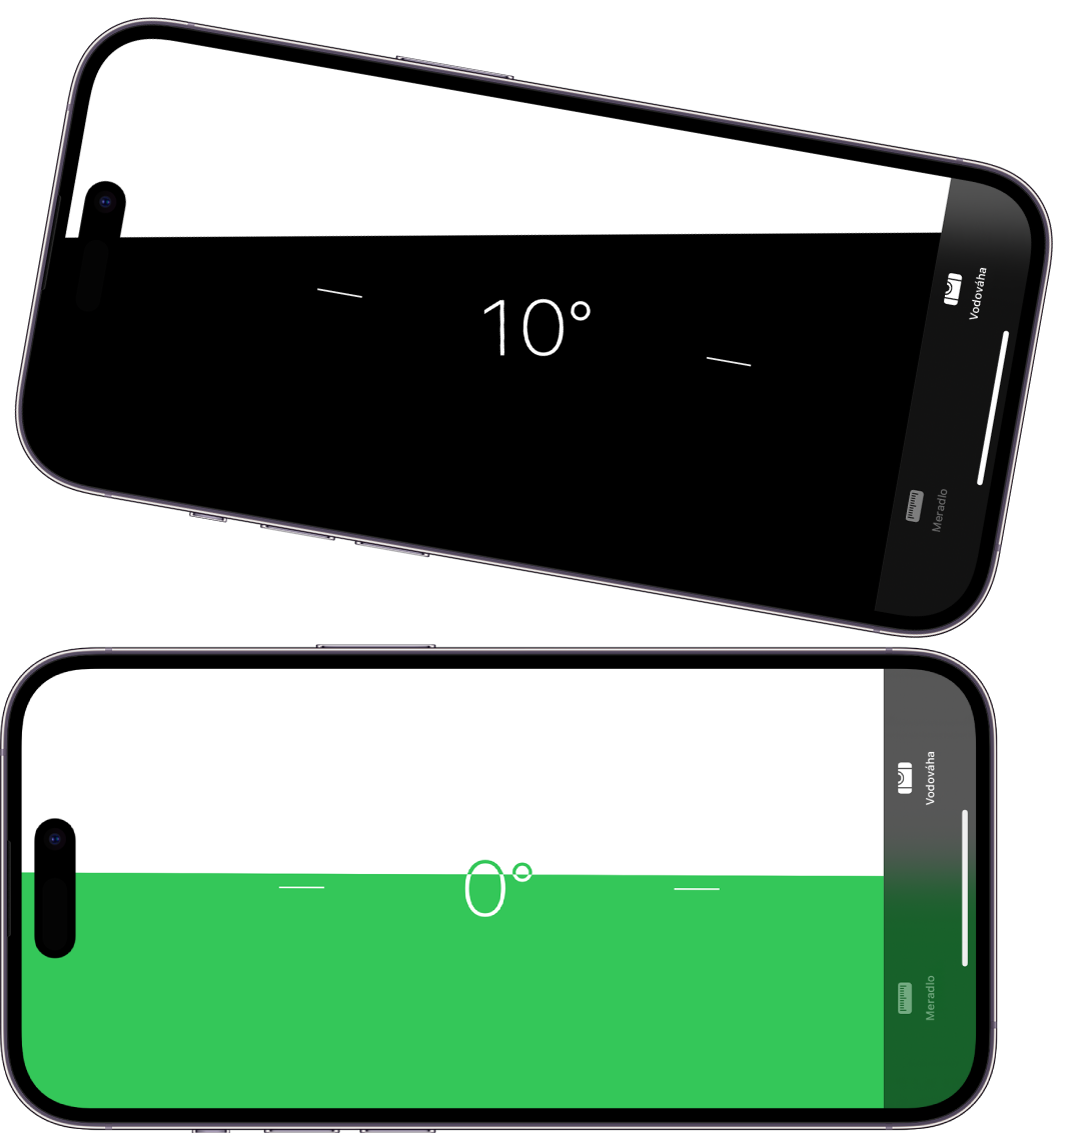 Obrazovka vyrovnania v apke Meradlo. Hore je iPhone naklonený pod uhlom desiatich stupňov; dole je iPhone vo vodorovnej polohe.